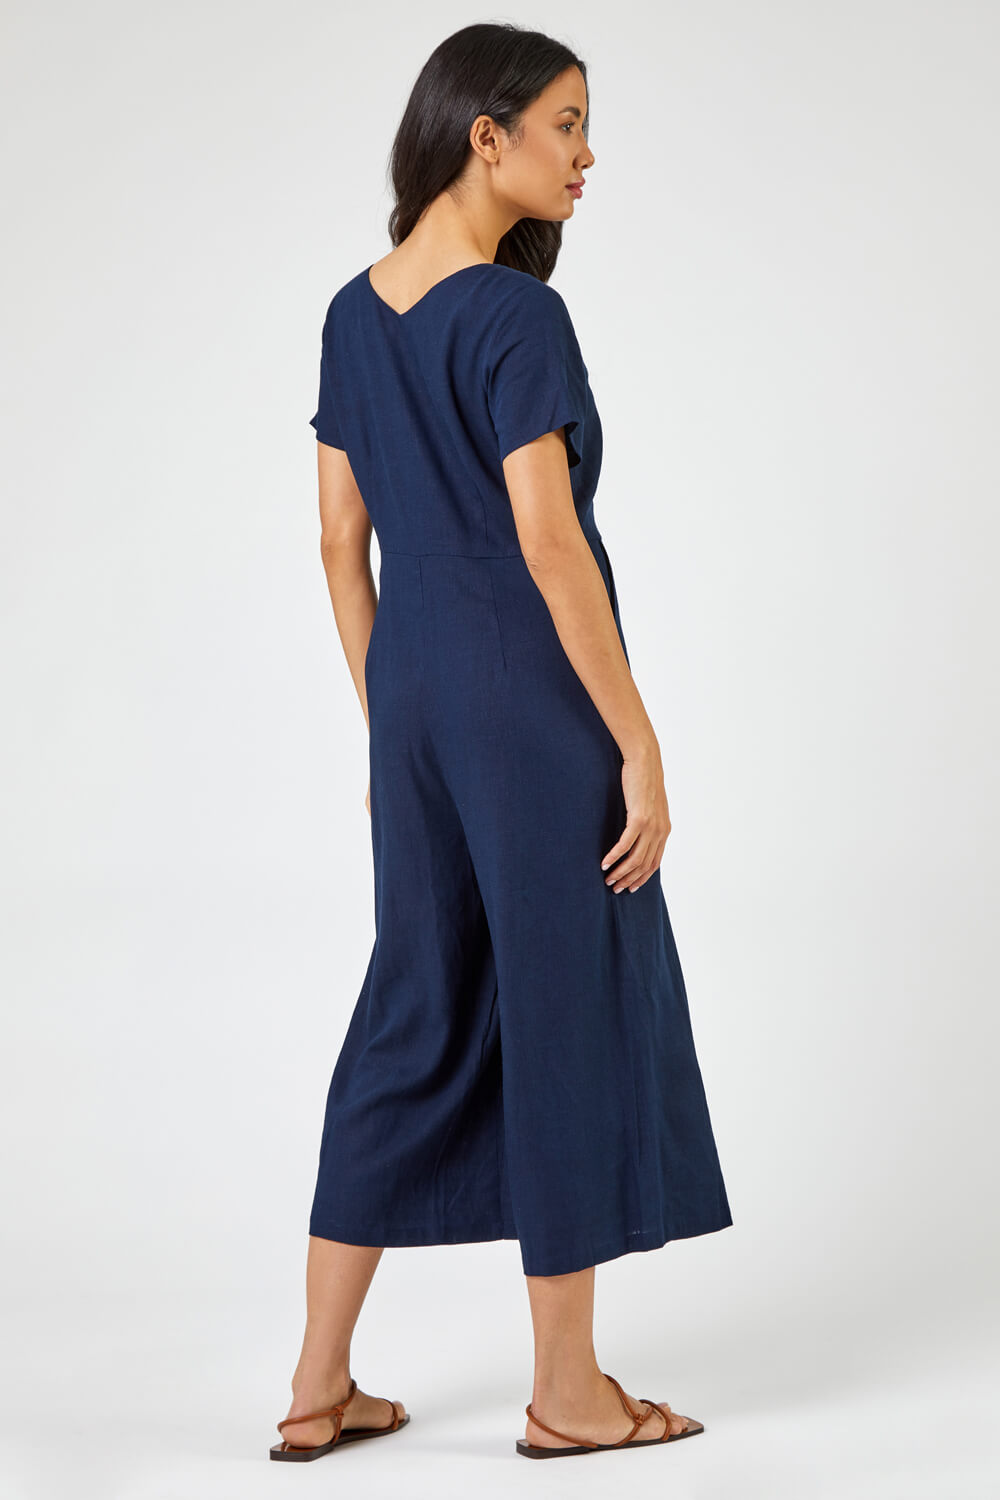 Navy  Cotton Blend Culotte Jumpsuit, Image 2 of 5